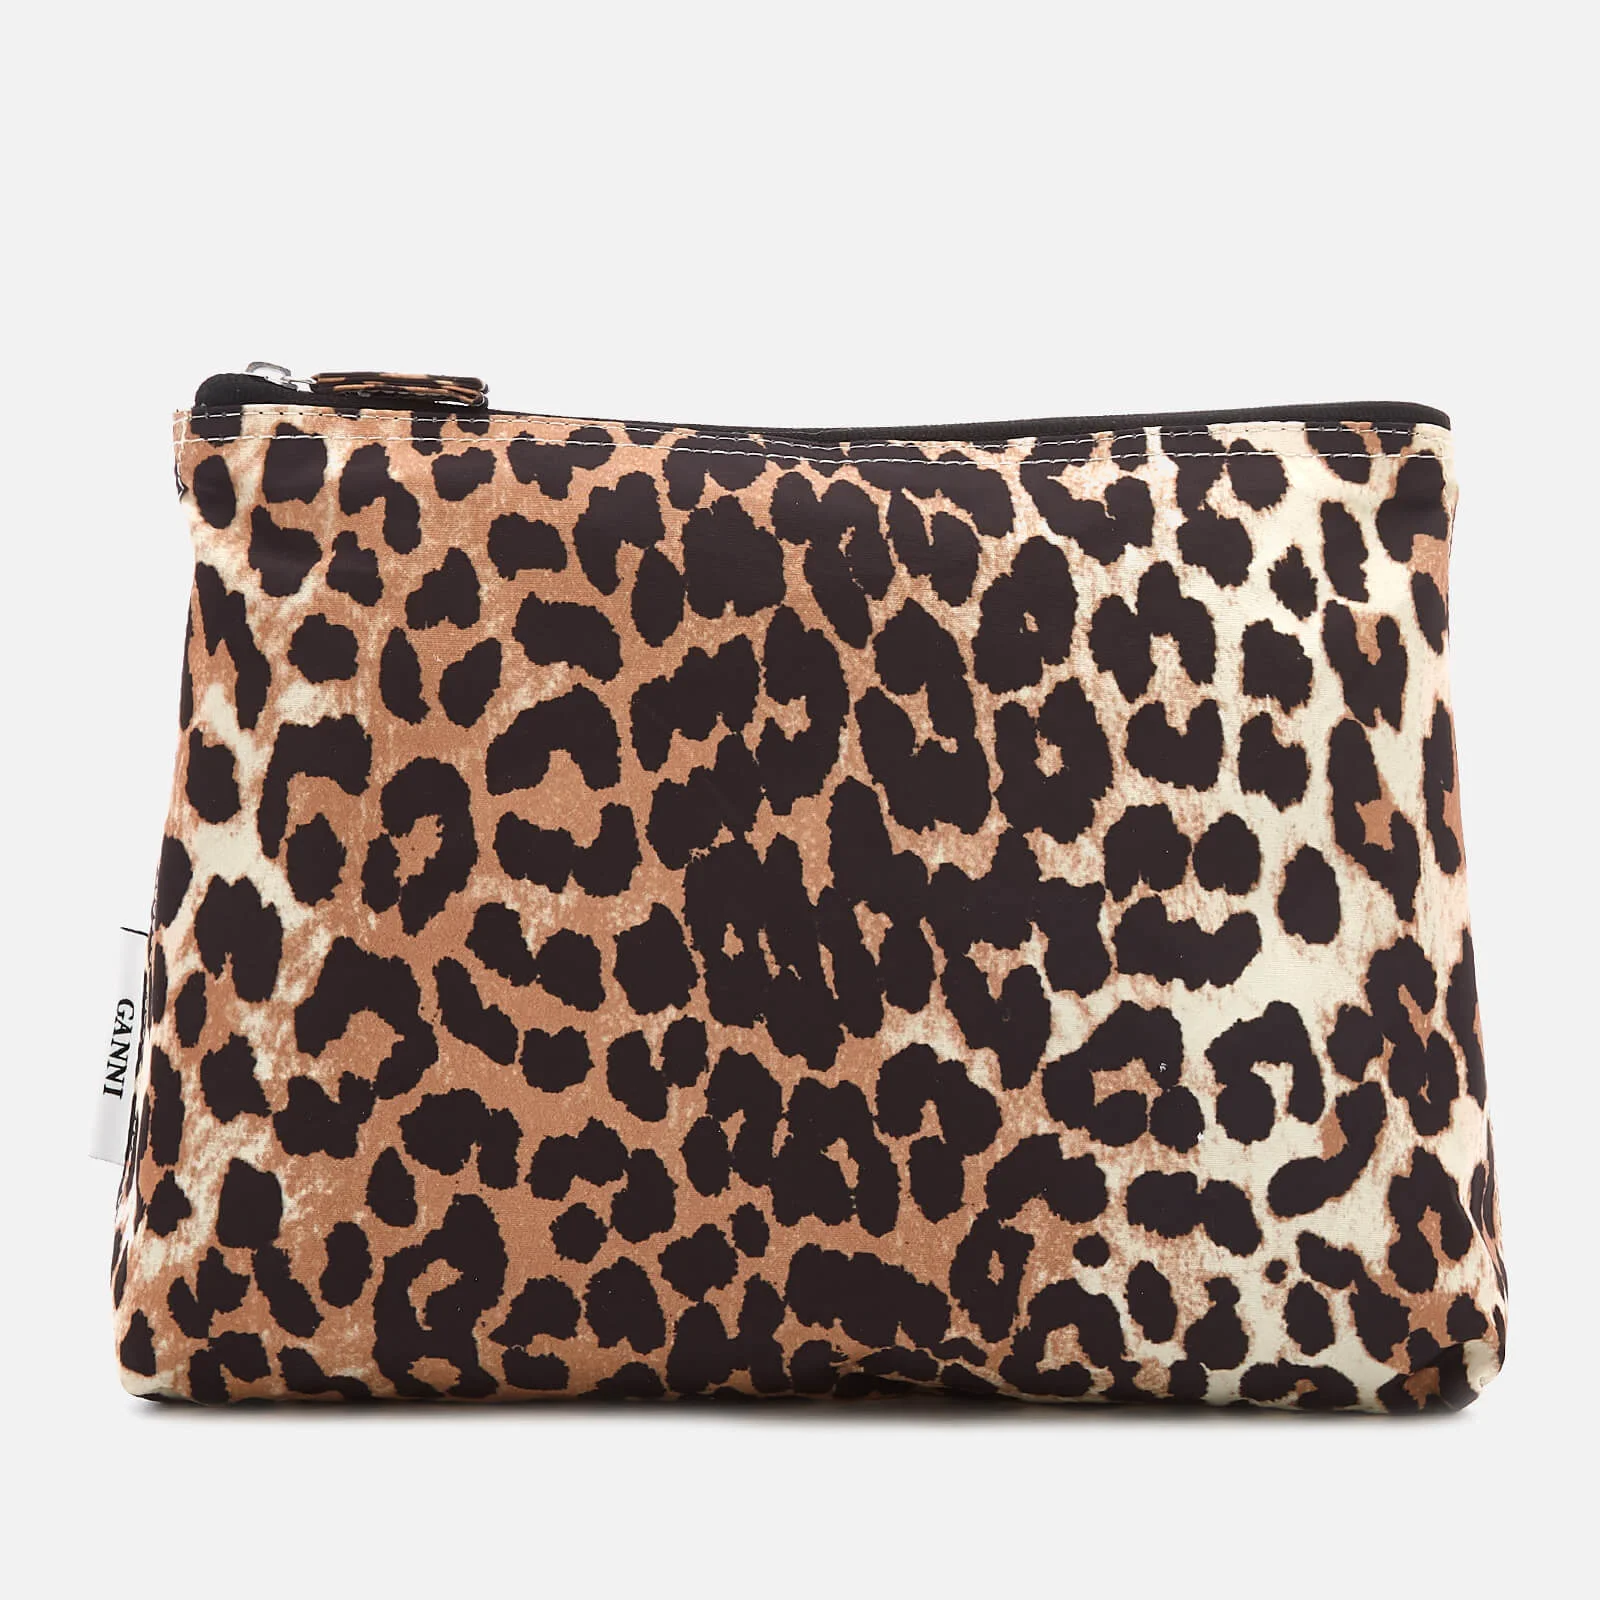 Ganni Women's Fairmont Make Up Bag - Leopard Image 1